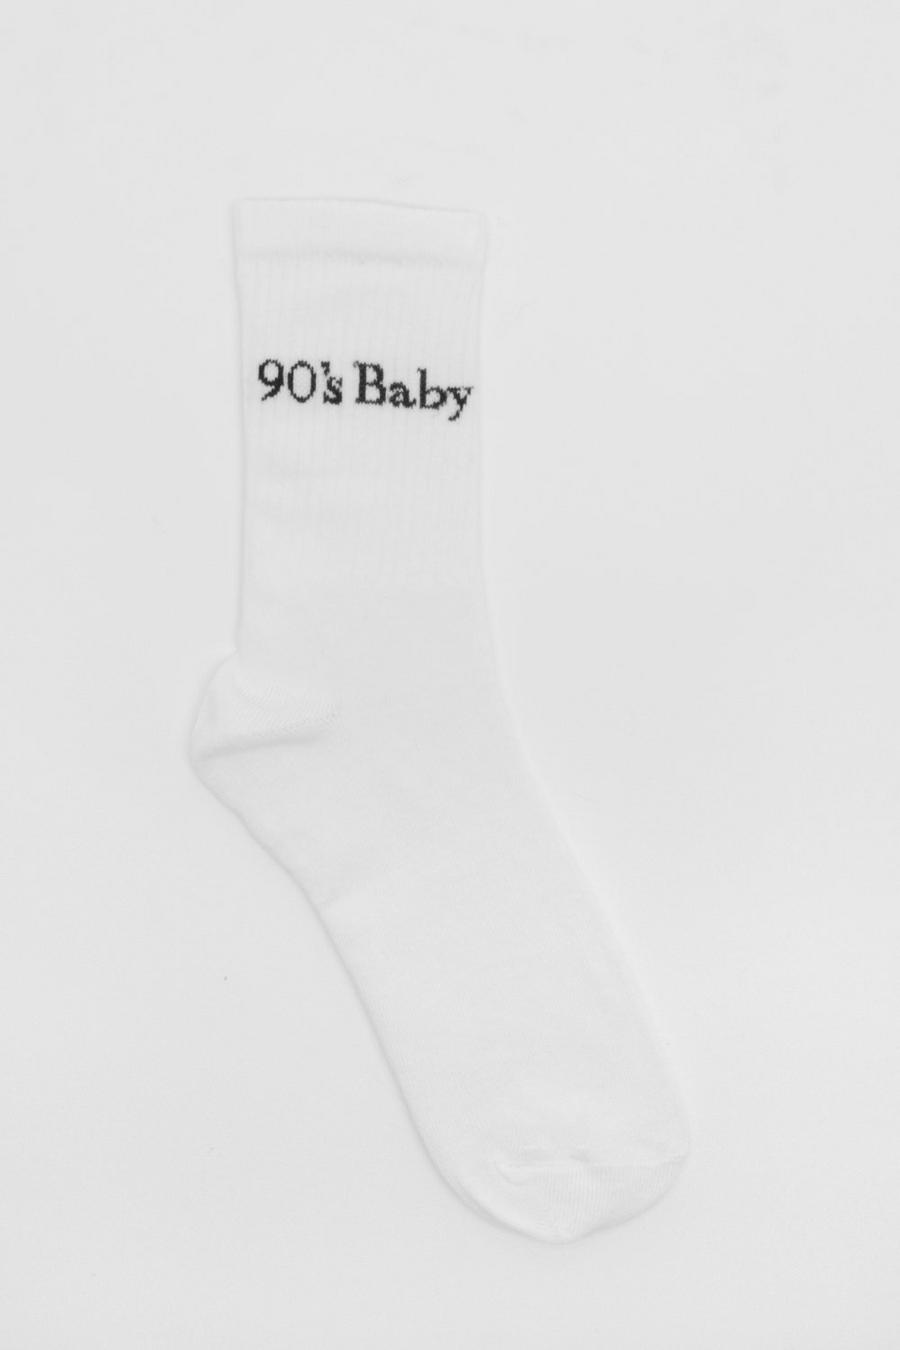 Calzini sportivi bianchi a coste con scritta “90’s Baby”, White bianco